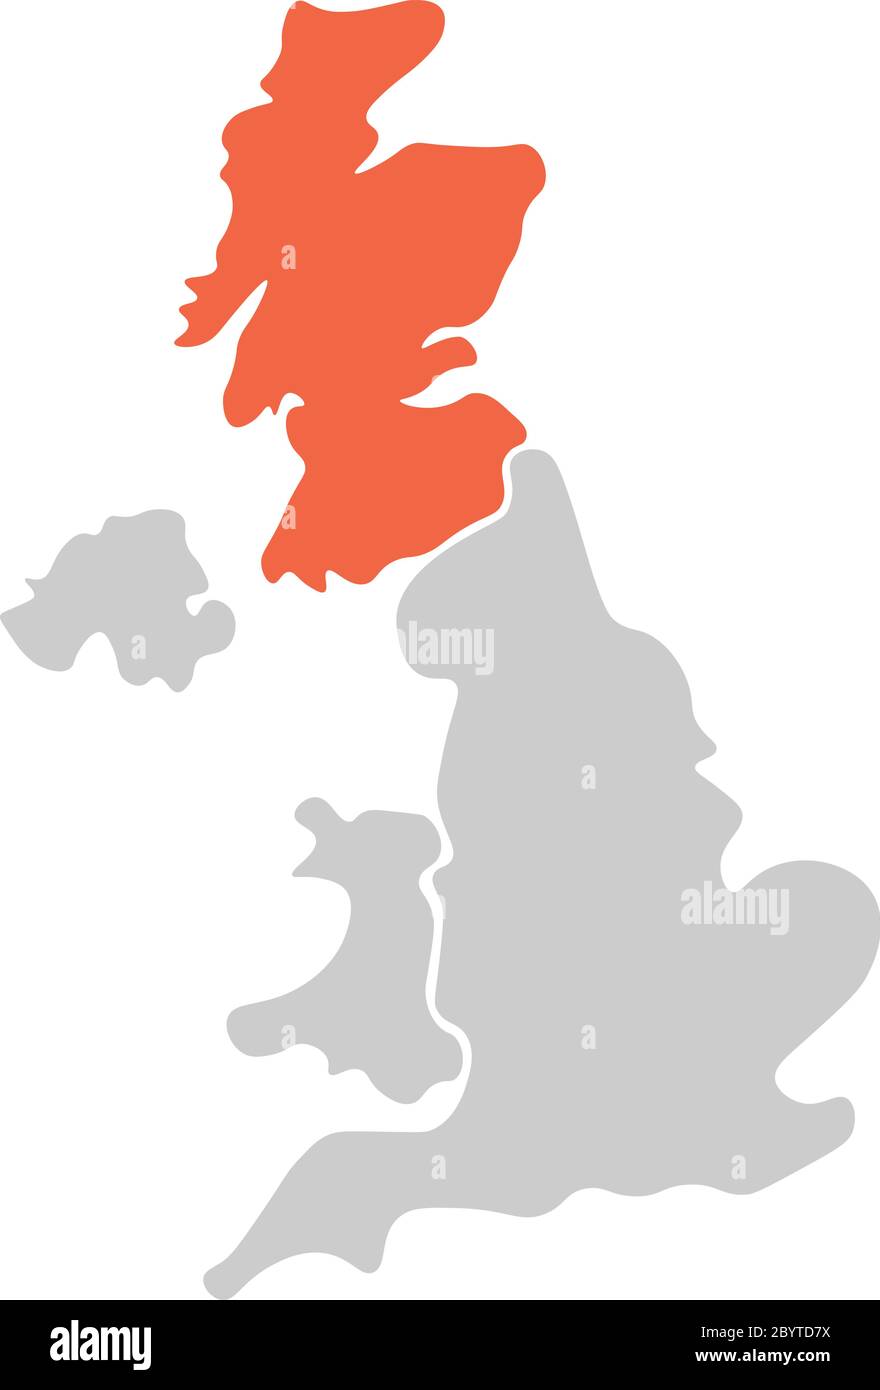 Vereinfachte, handgezeichnete, leere Karte des Vereinigten Königreichs von Großbritannien und Nordirland, Großbritannien. Aufgeteilt in vier Länder mit rot hervorgehobener schottischer Farbe. Einfache flache Vektorgrafik. Stock Vektor